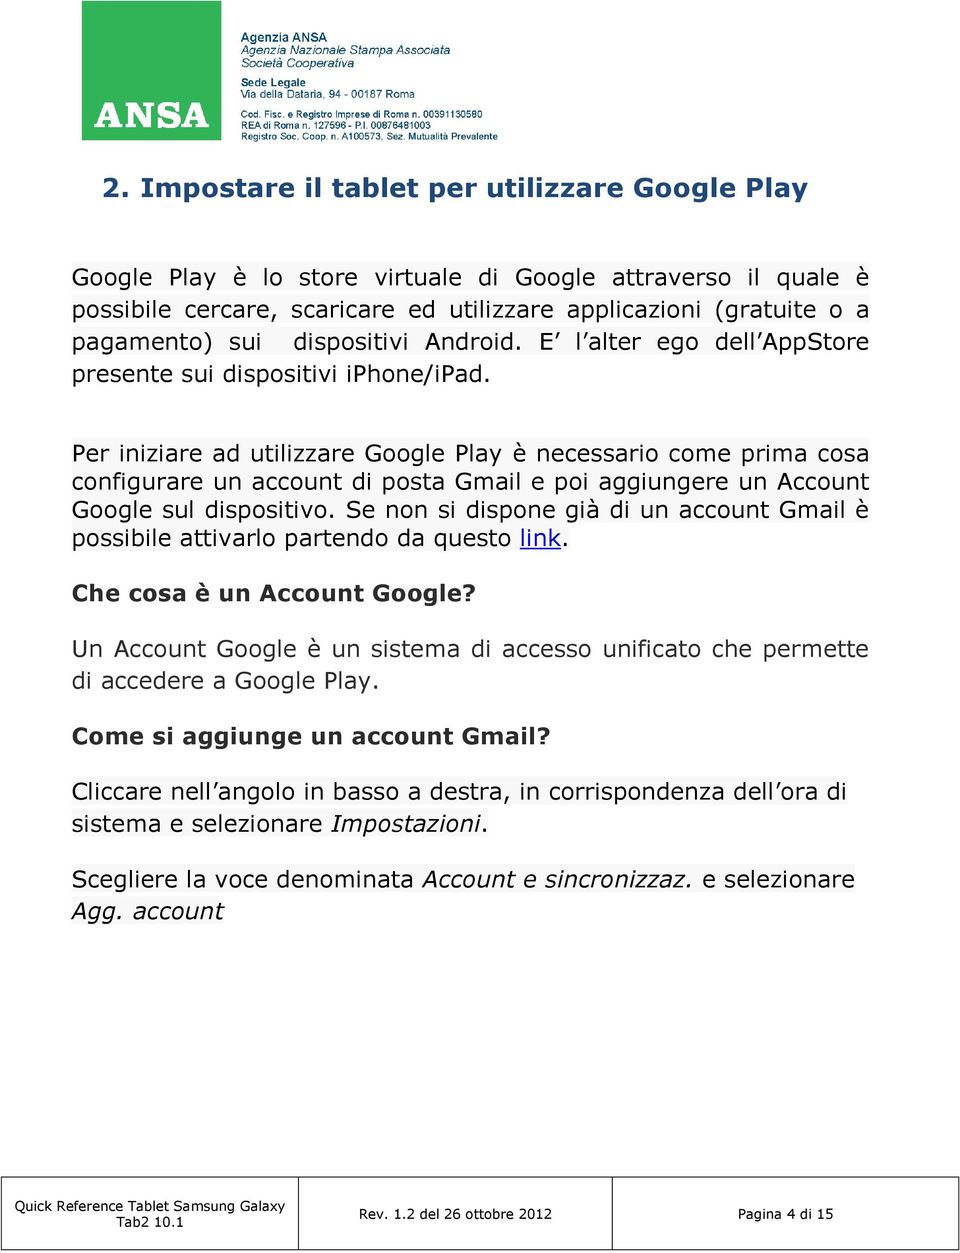 Per iniziare ad utilizzare Google Play è necessario come prima cosa configurare un account di posta Gmail e poi aggiungere un Account Google sul dispositivo.